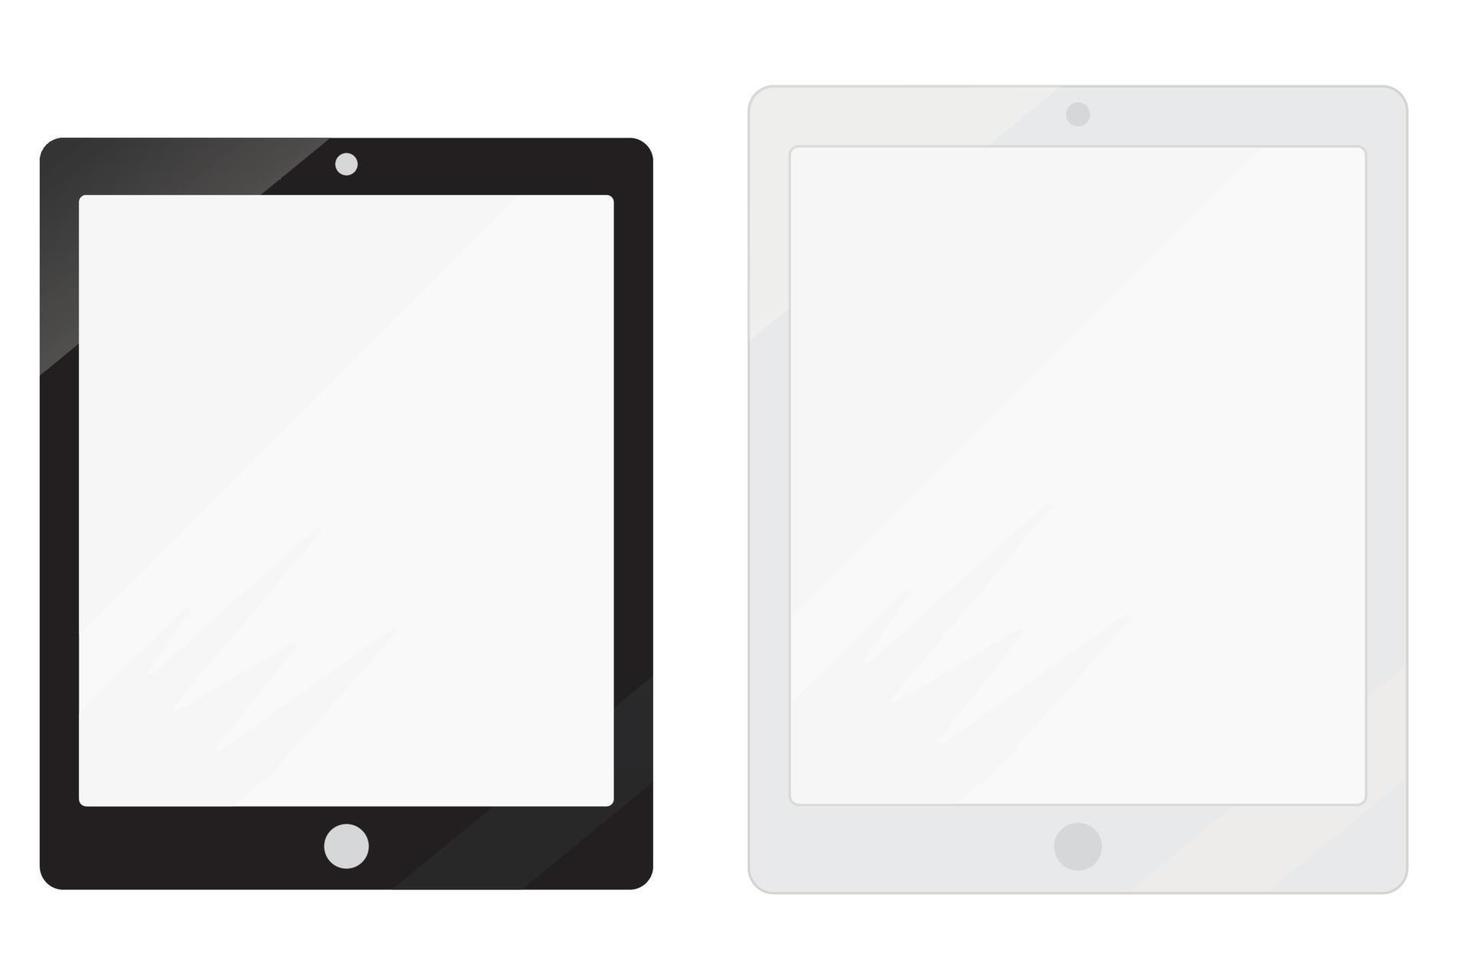 zwart-wit tablet pc-mockups met lege schermen. responsieve schermen om het ontwerp van mobiele websites weer te geven. vector